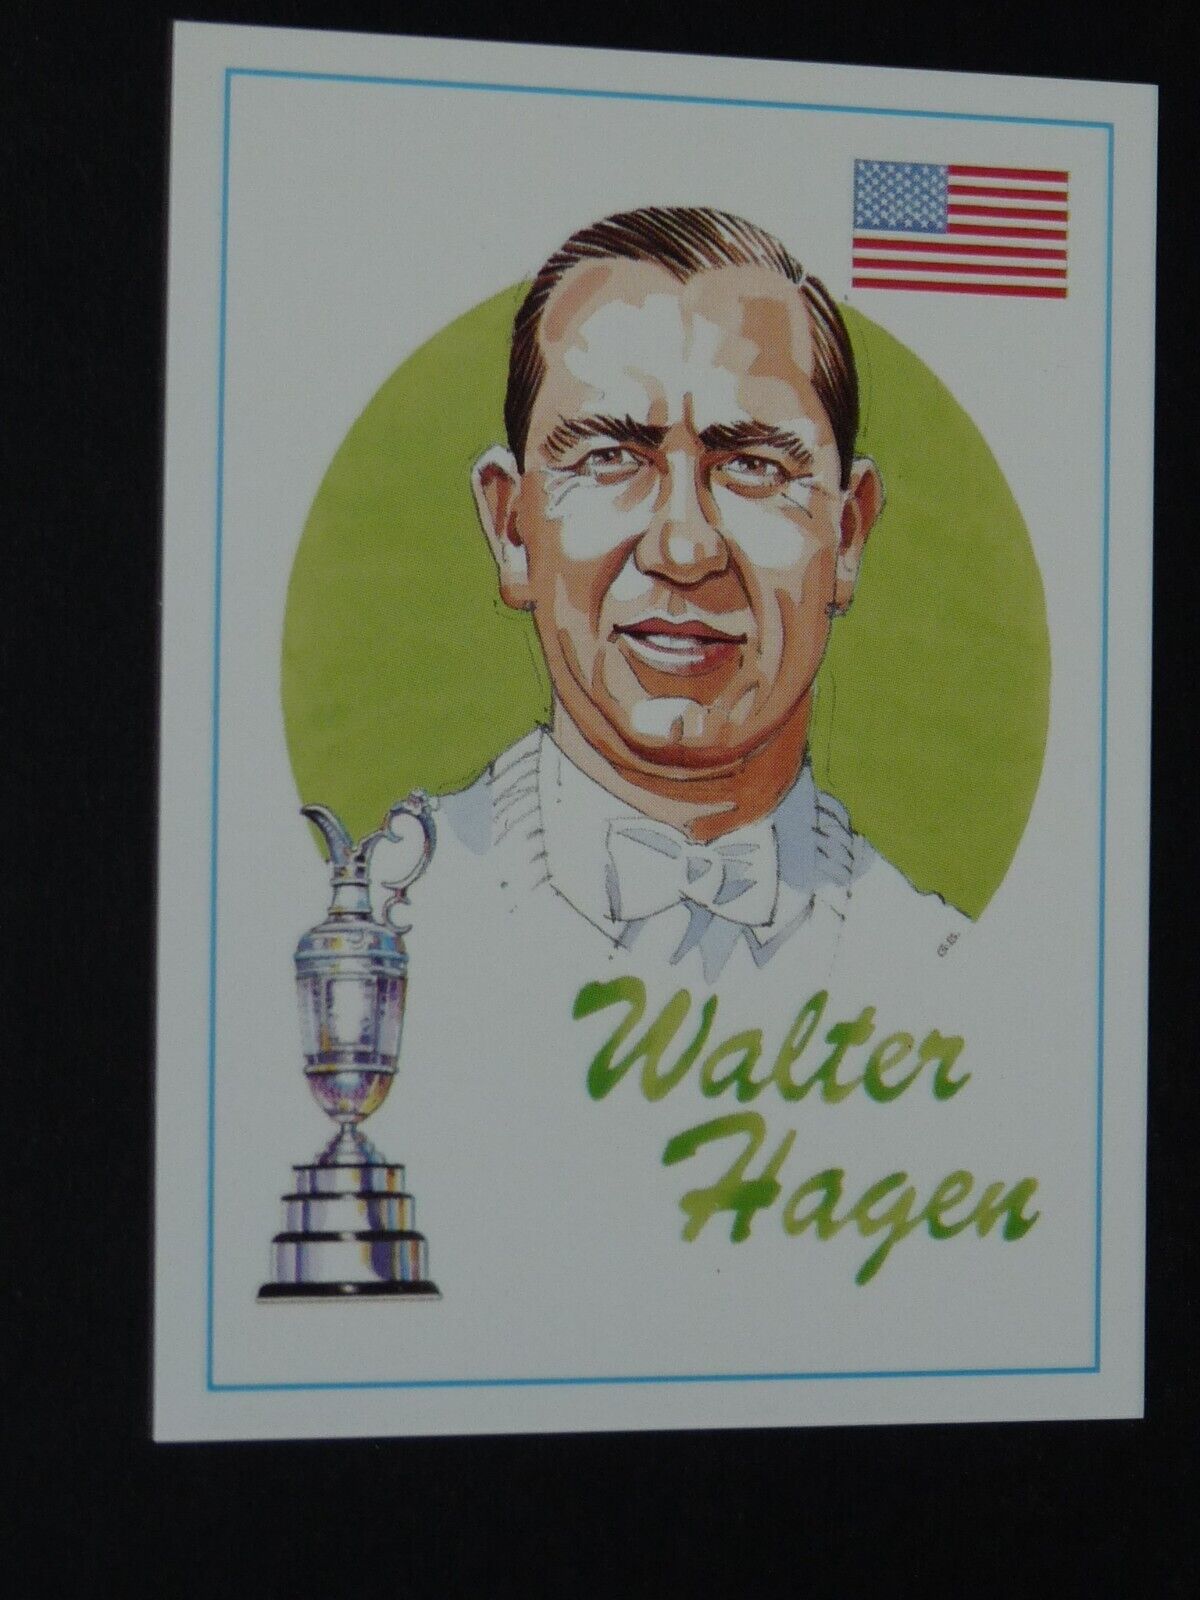 GAMEPLAN CARD 1993 GOLF OPEN CHAMPIONS GOLFING #6 WALTER HAAGEN USA GOLFER